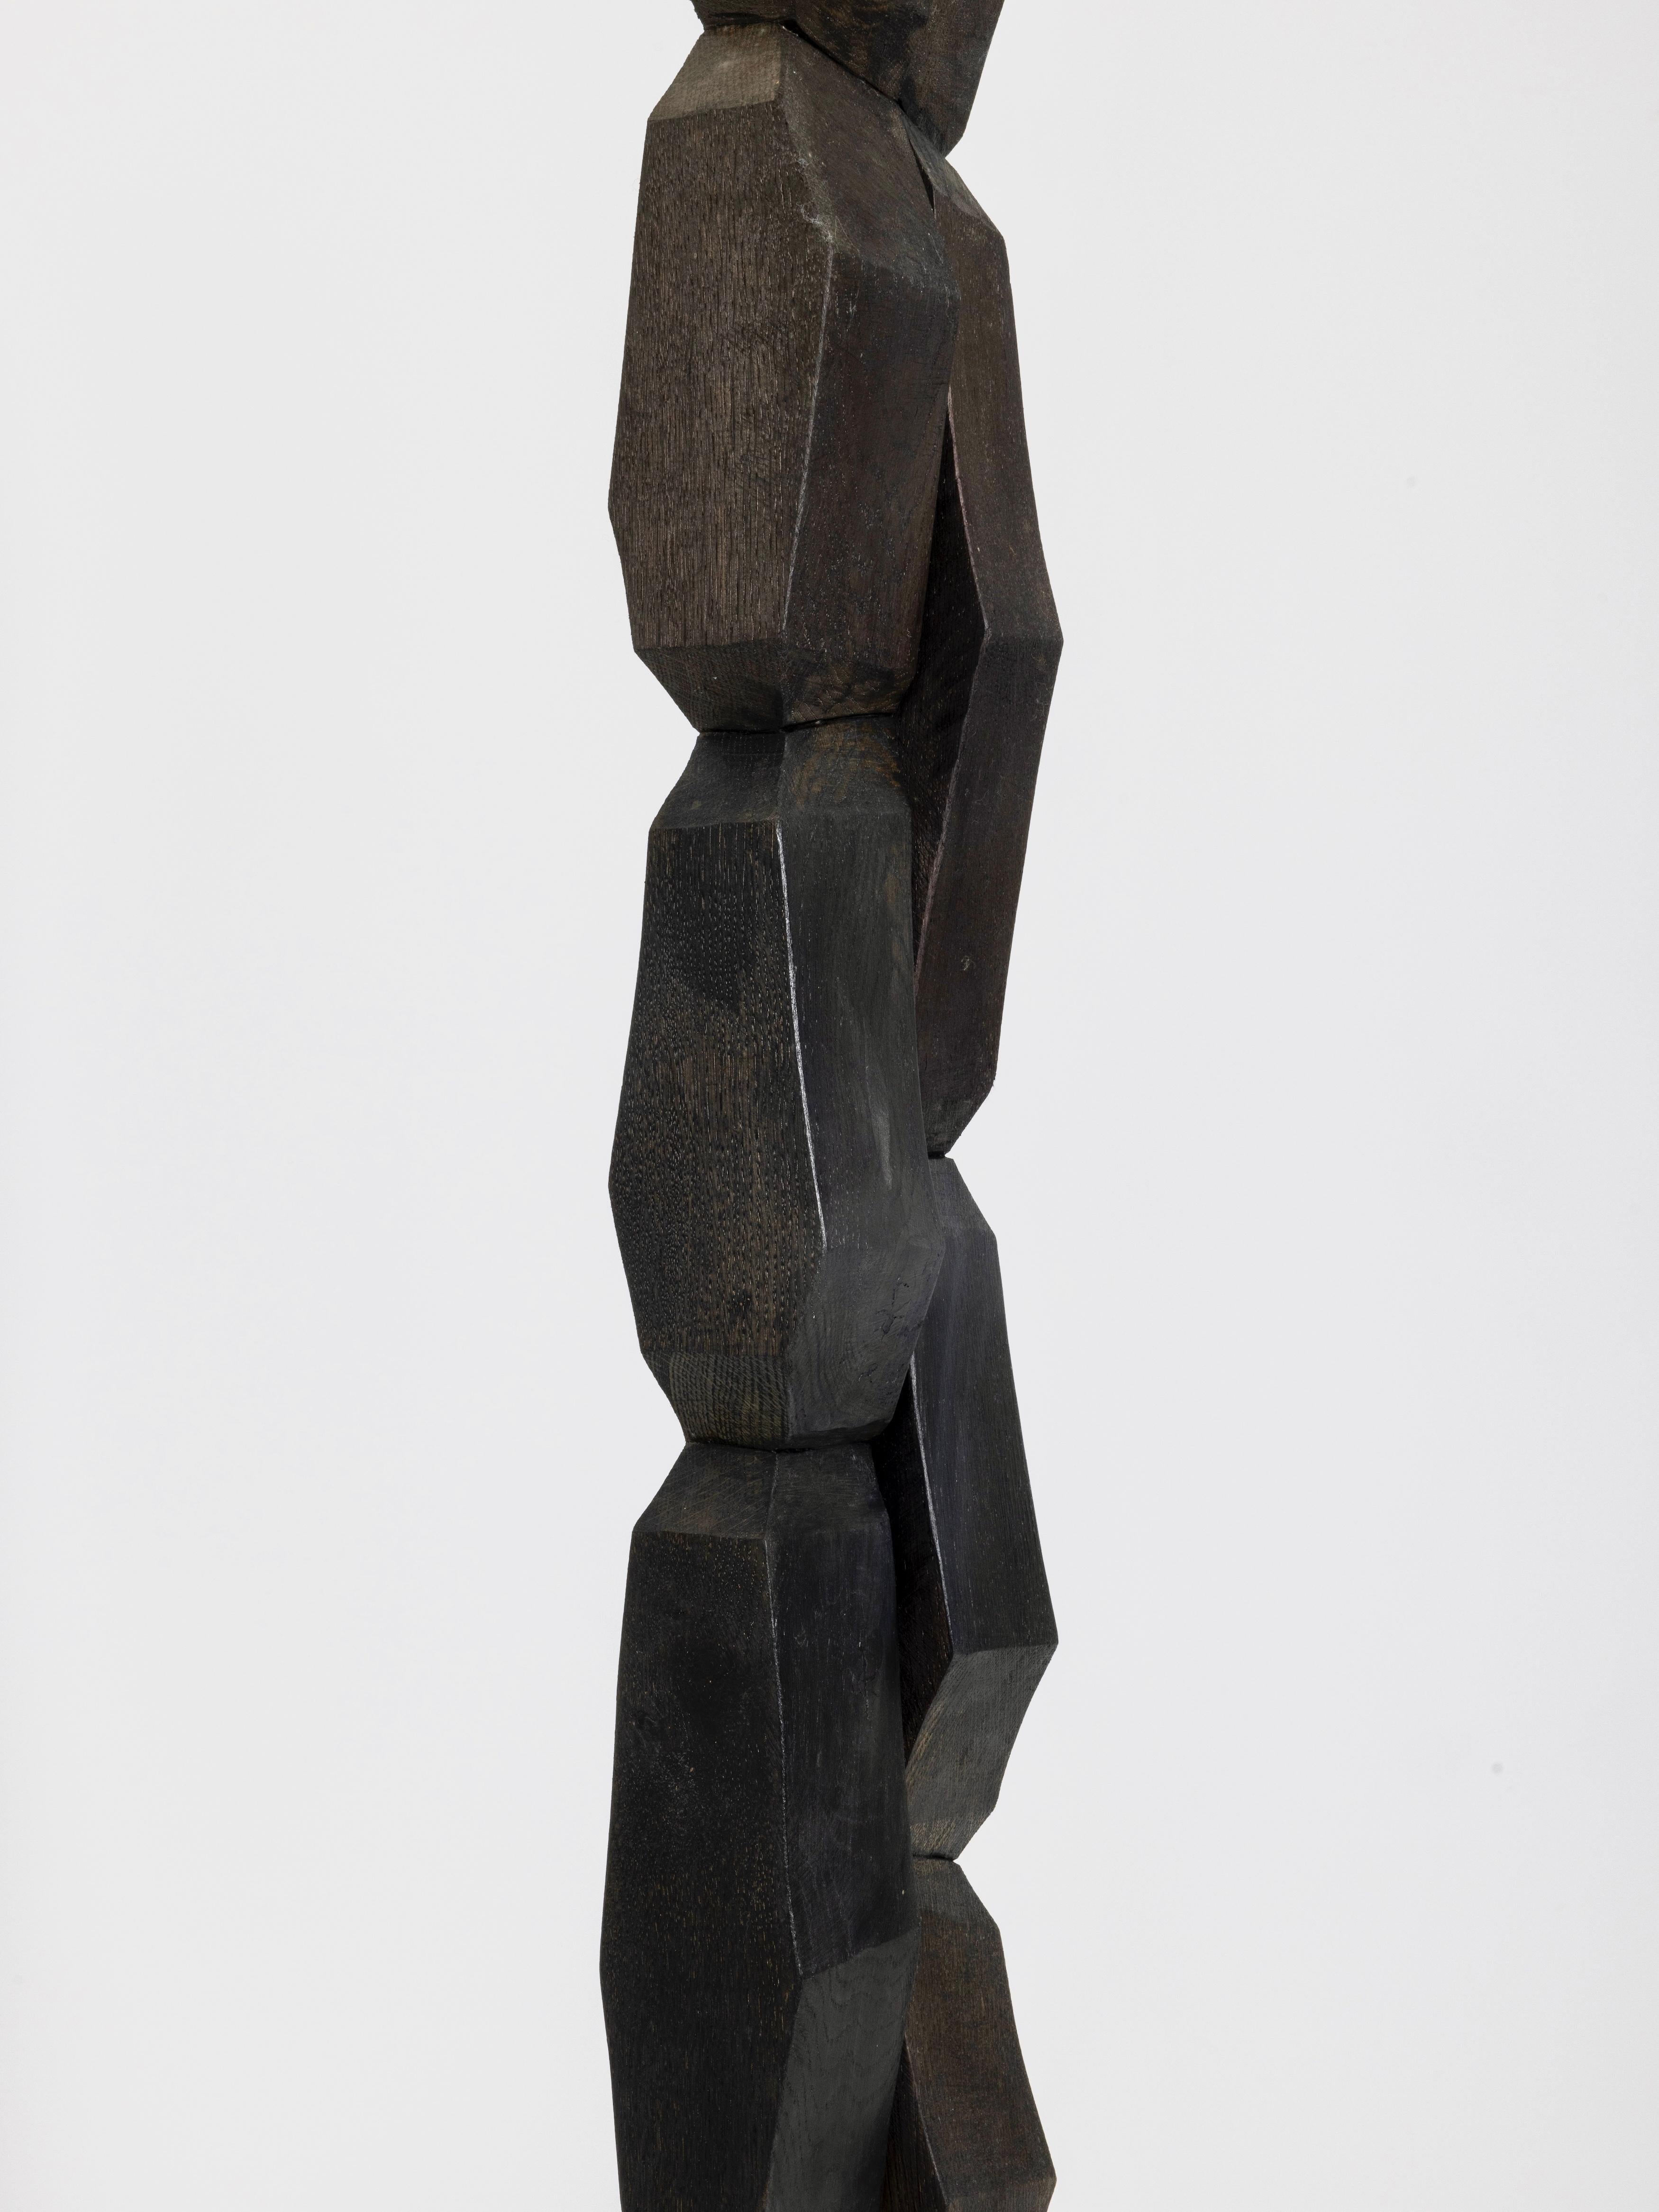 Zeitgenössische Totem-Skulptur aus Holz von Bertrand Créac'h, Frankreich (Handgeschnitzt) im Angebot